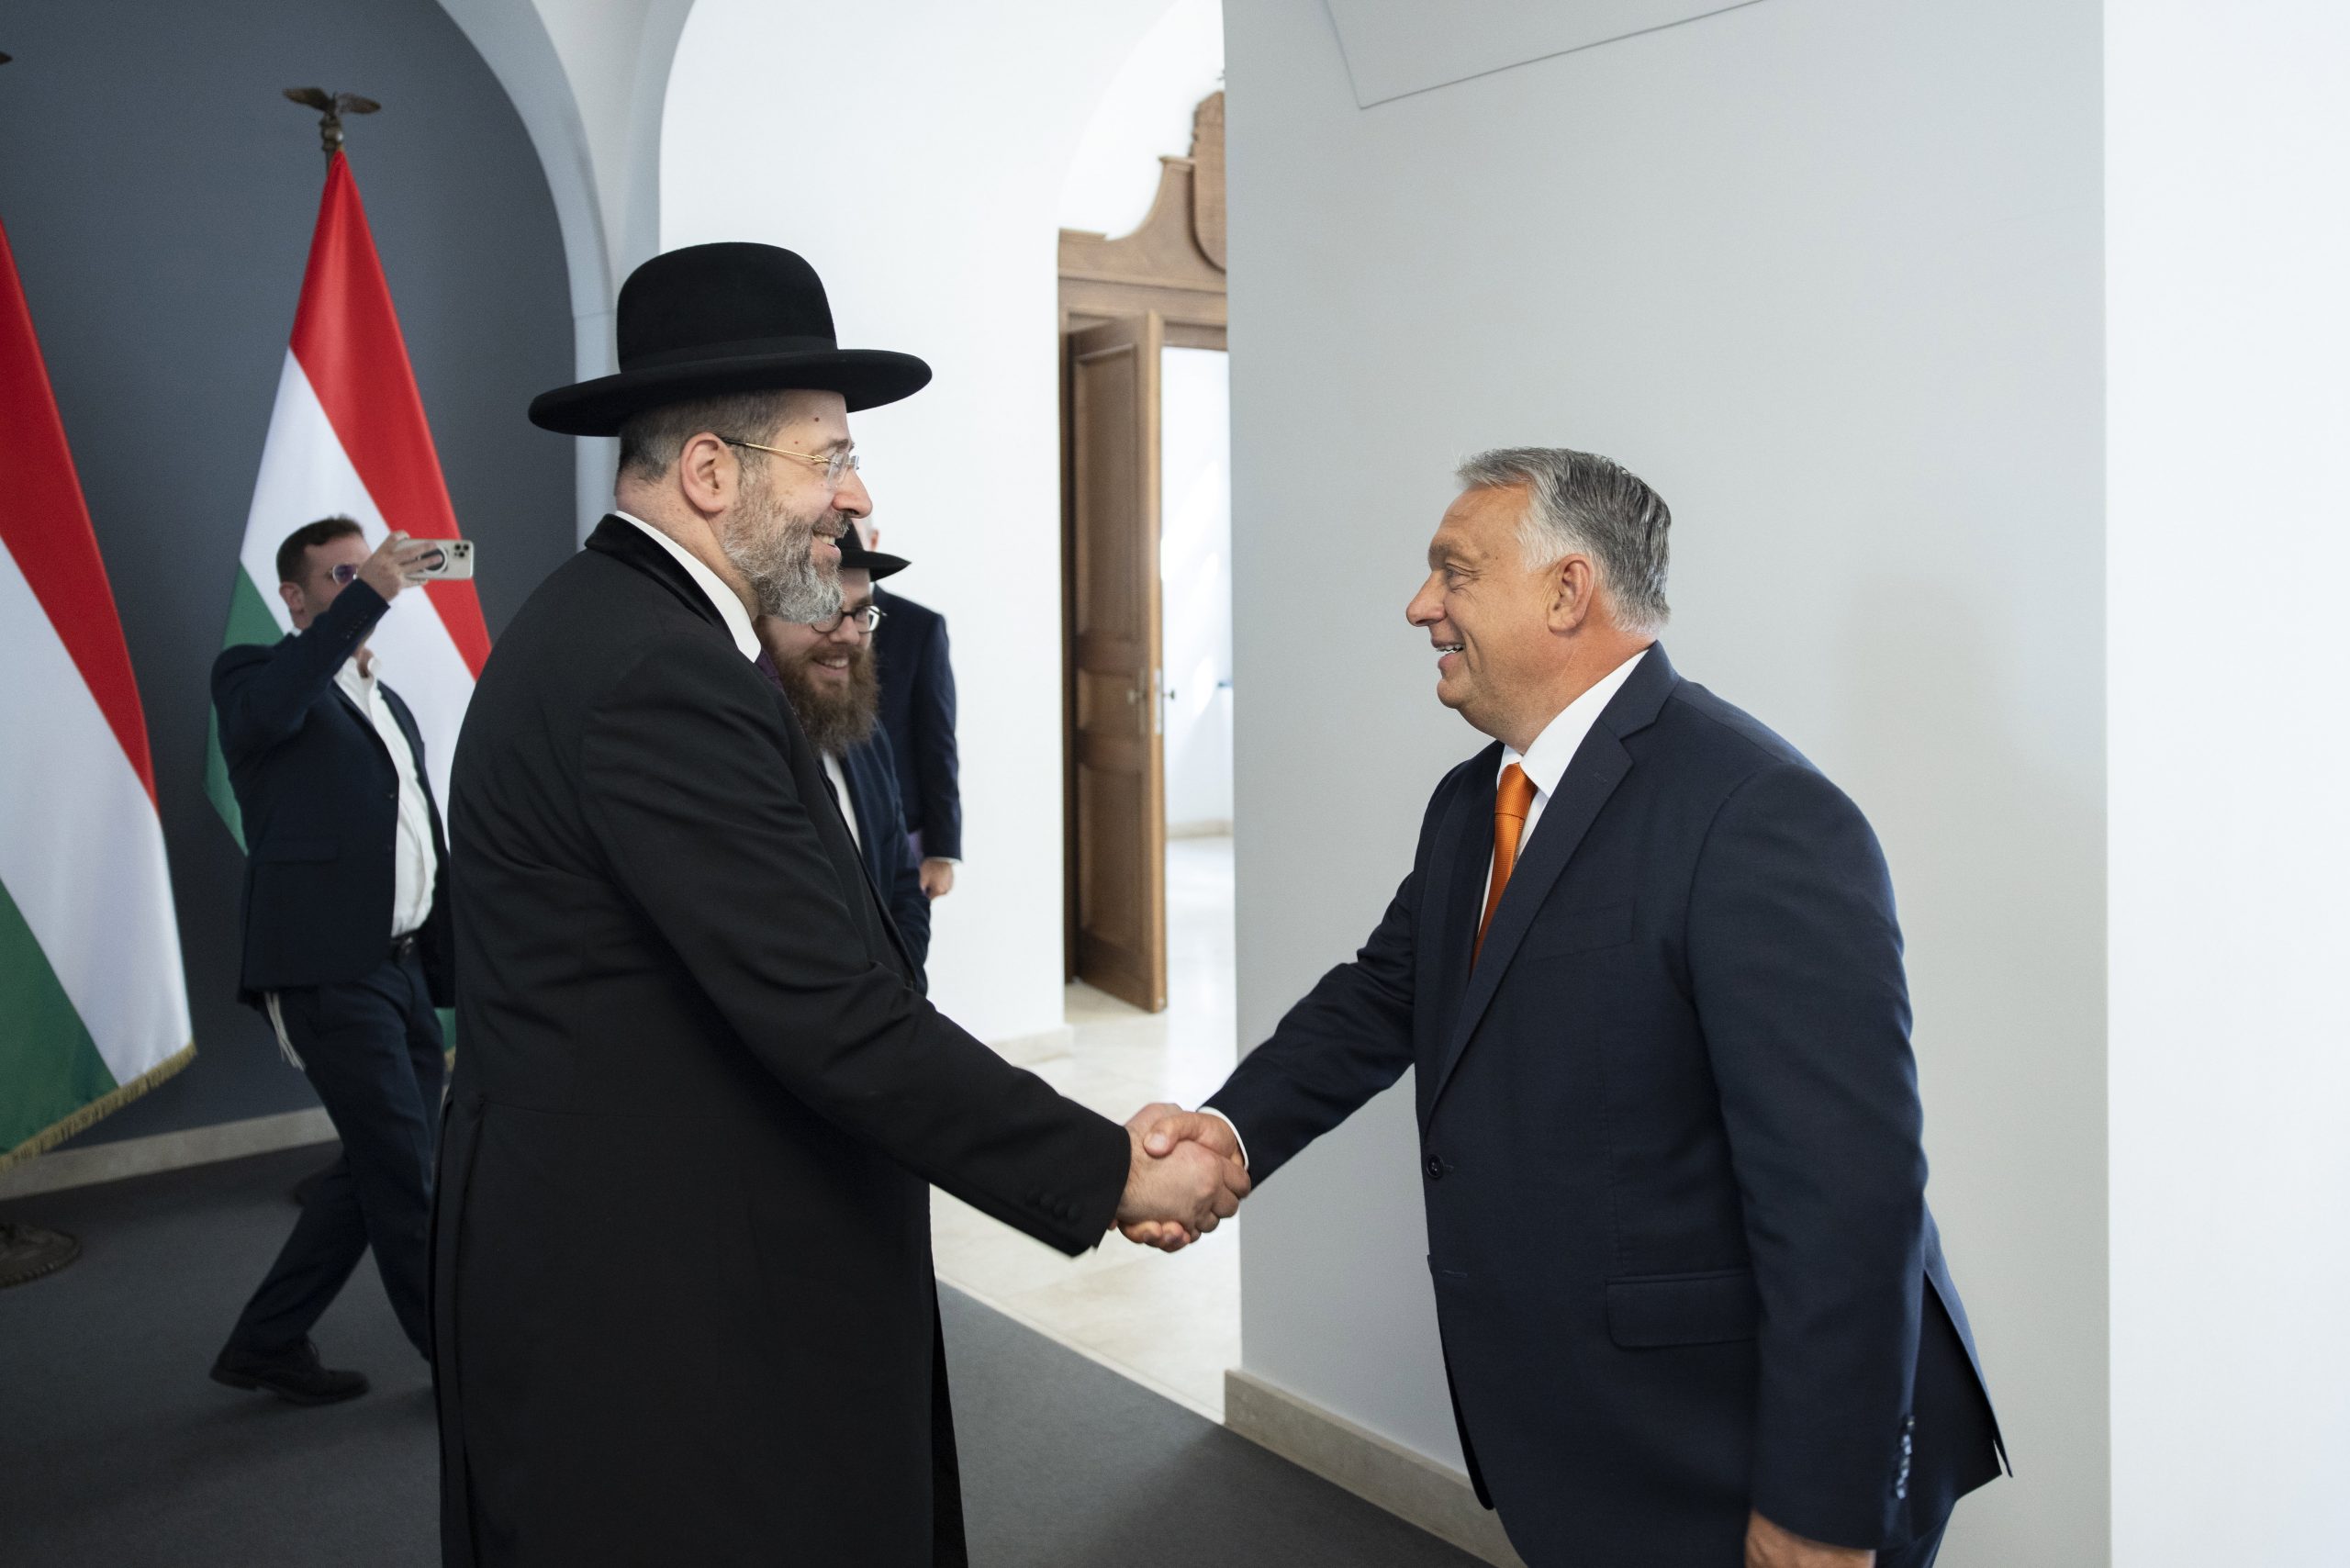 Viktor Orbán Meets Israel’s Chief Rabbi